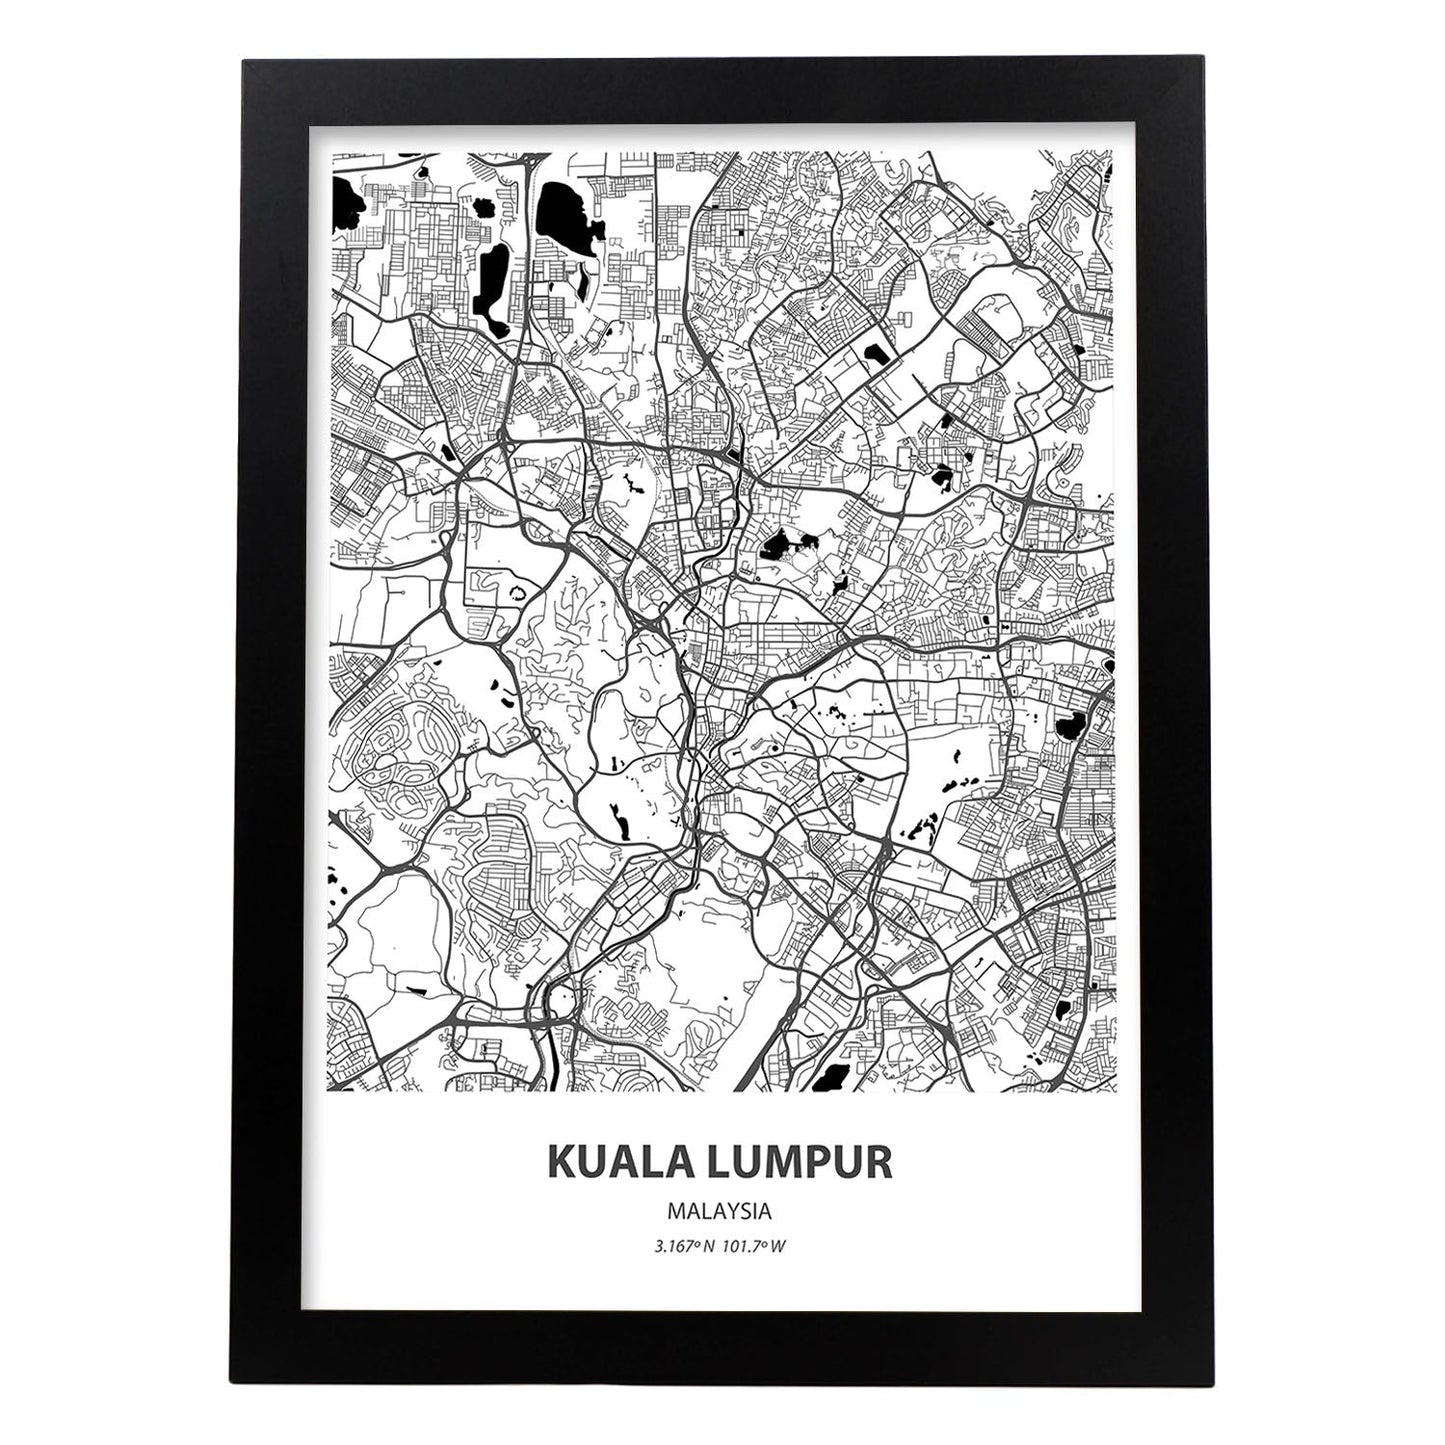 Poster con mapa de Kuala Lumpur - Malasia. Láminas de ciudades de Asia con mares y ríos en color negro.-Artwork-Nacnic-A3-Marco Negro-Nacnic Estudio SL